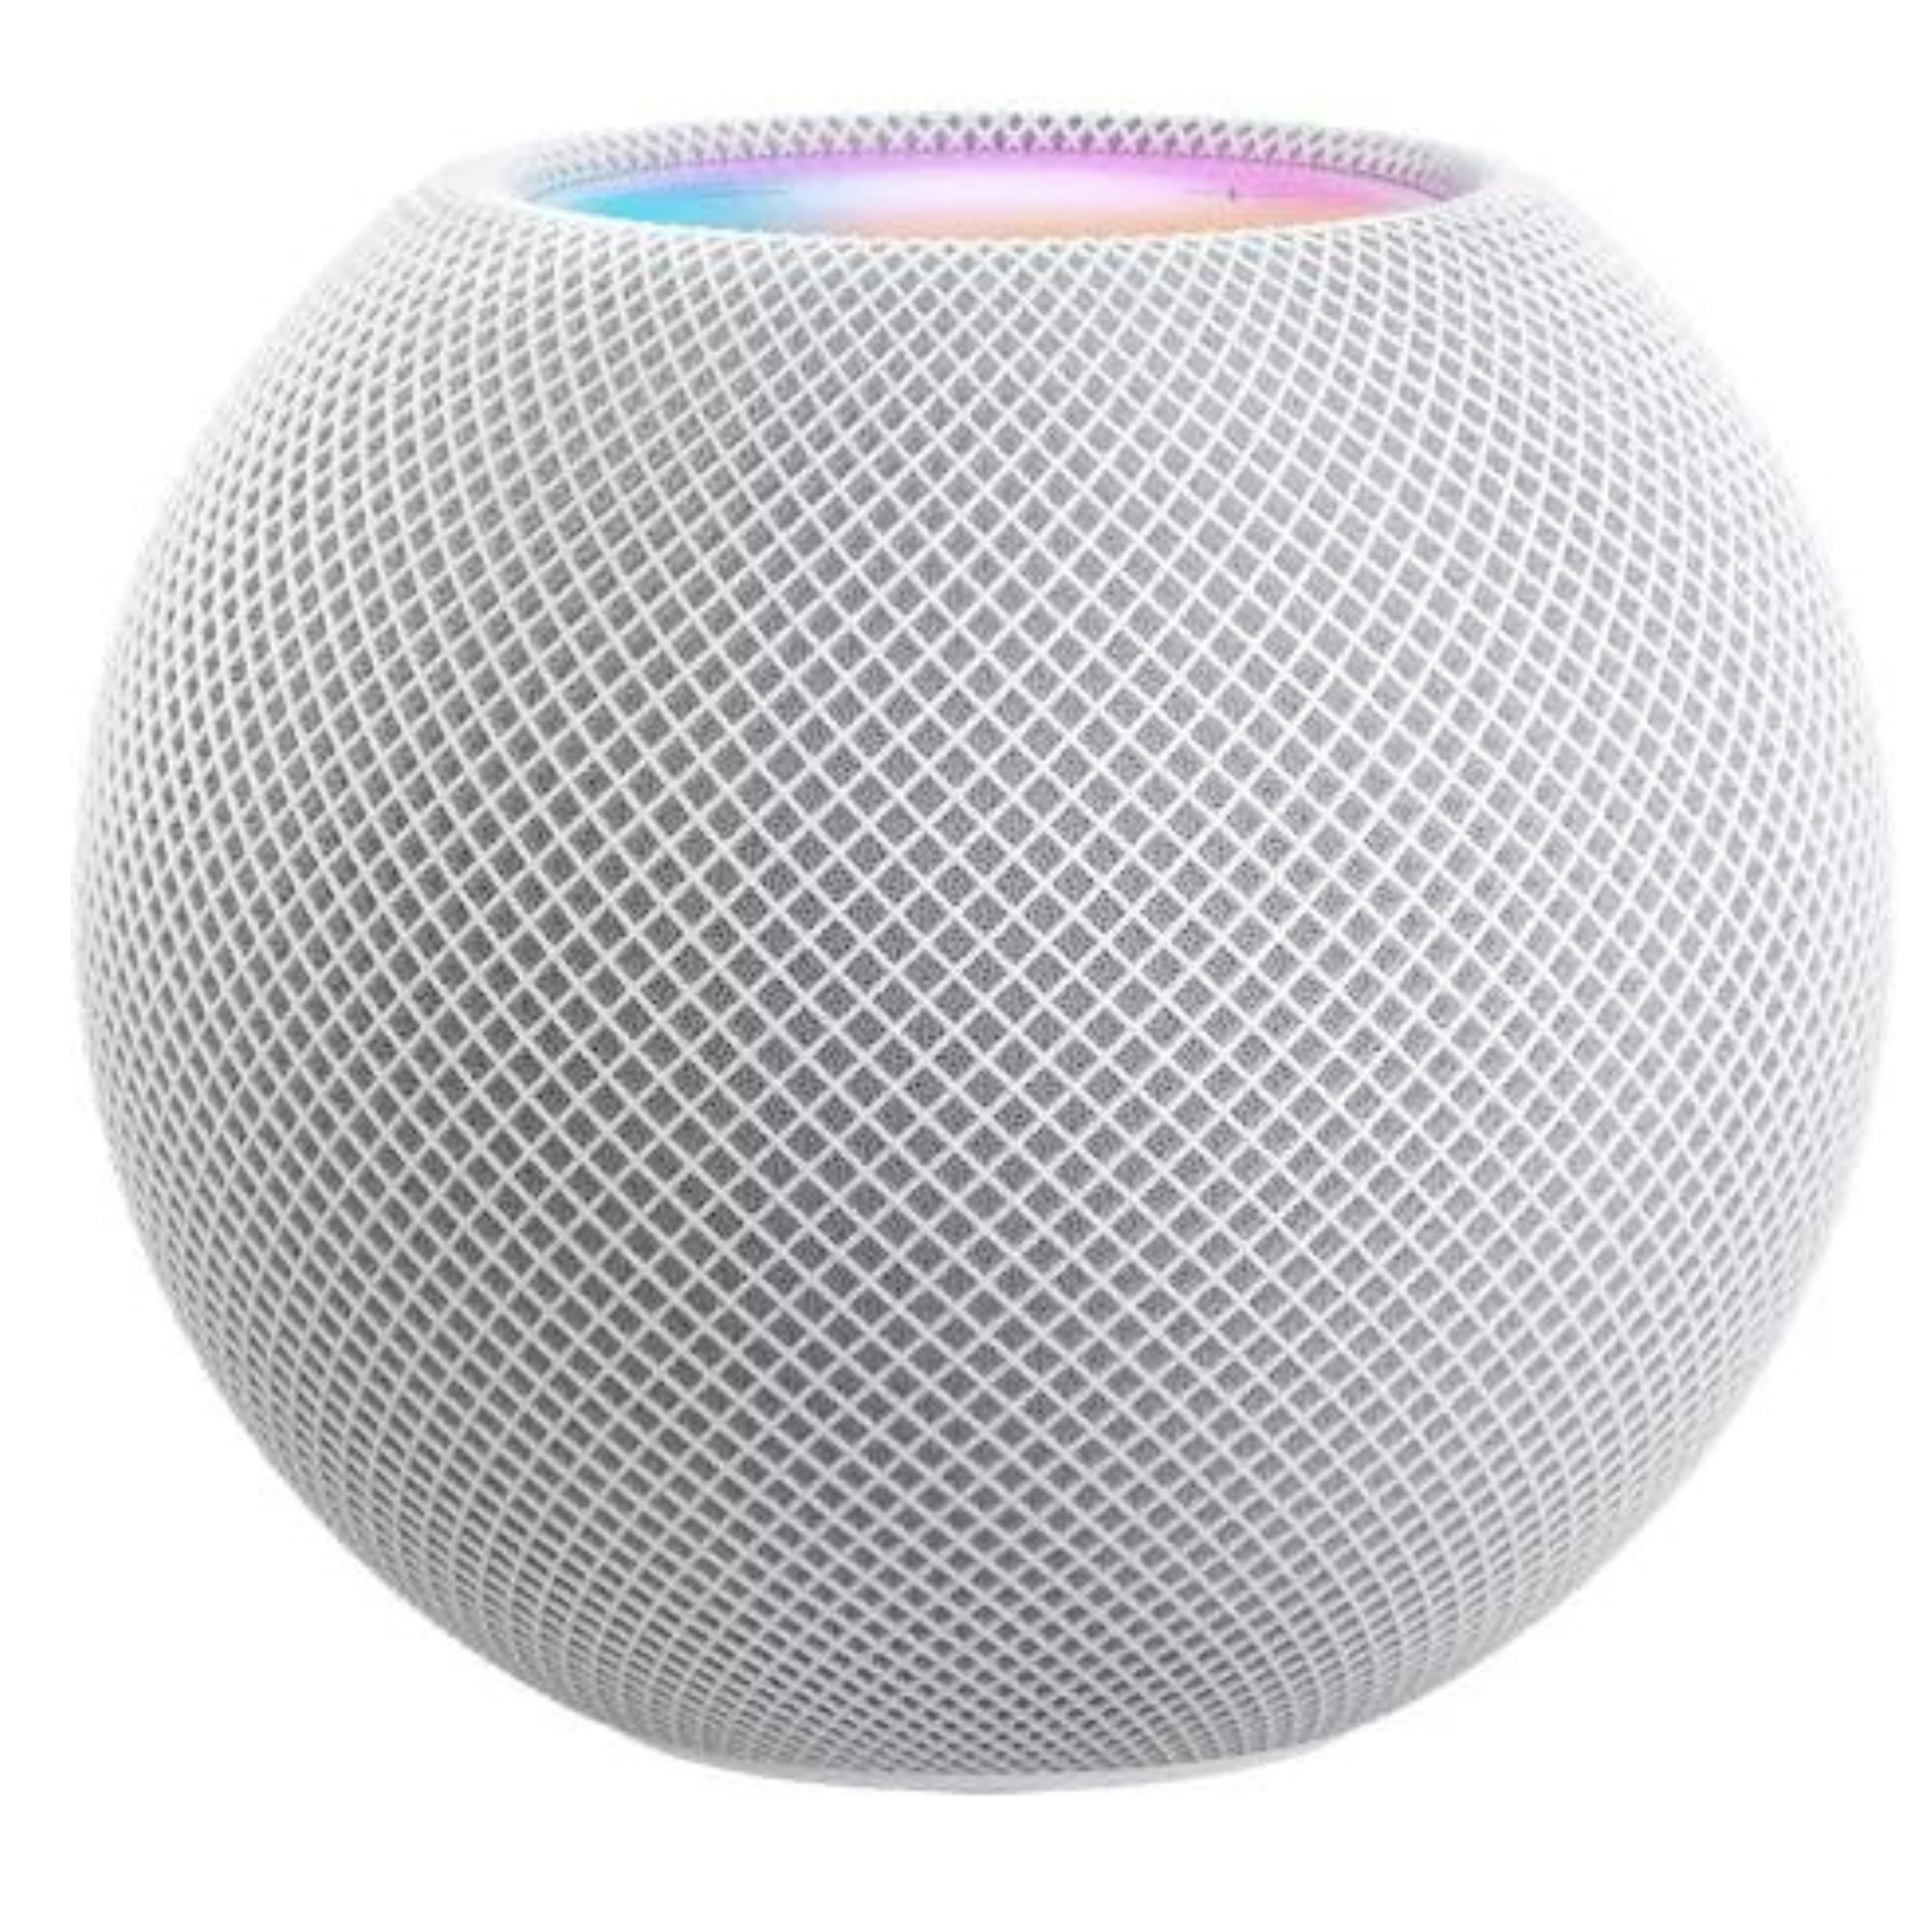 2 Apple HomePod mini Smart Speaker